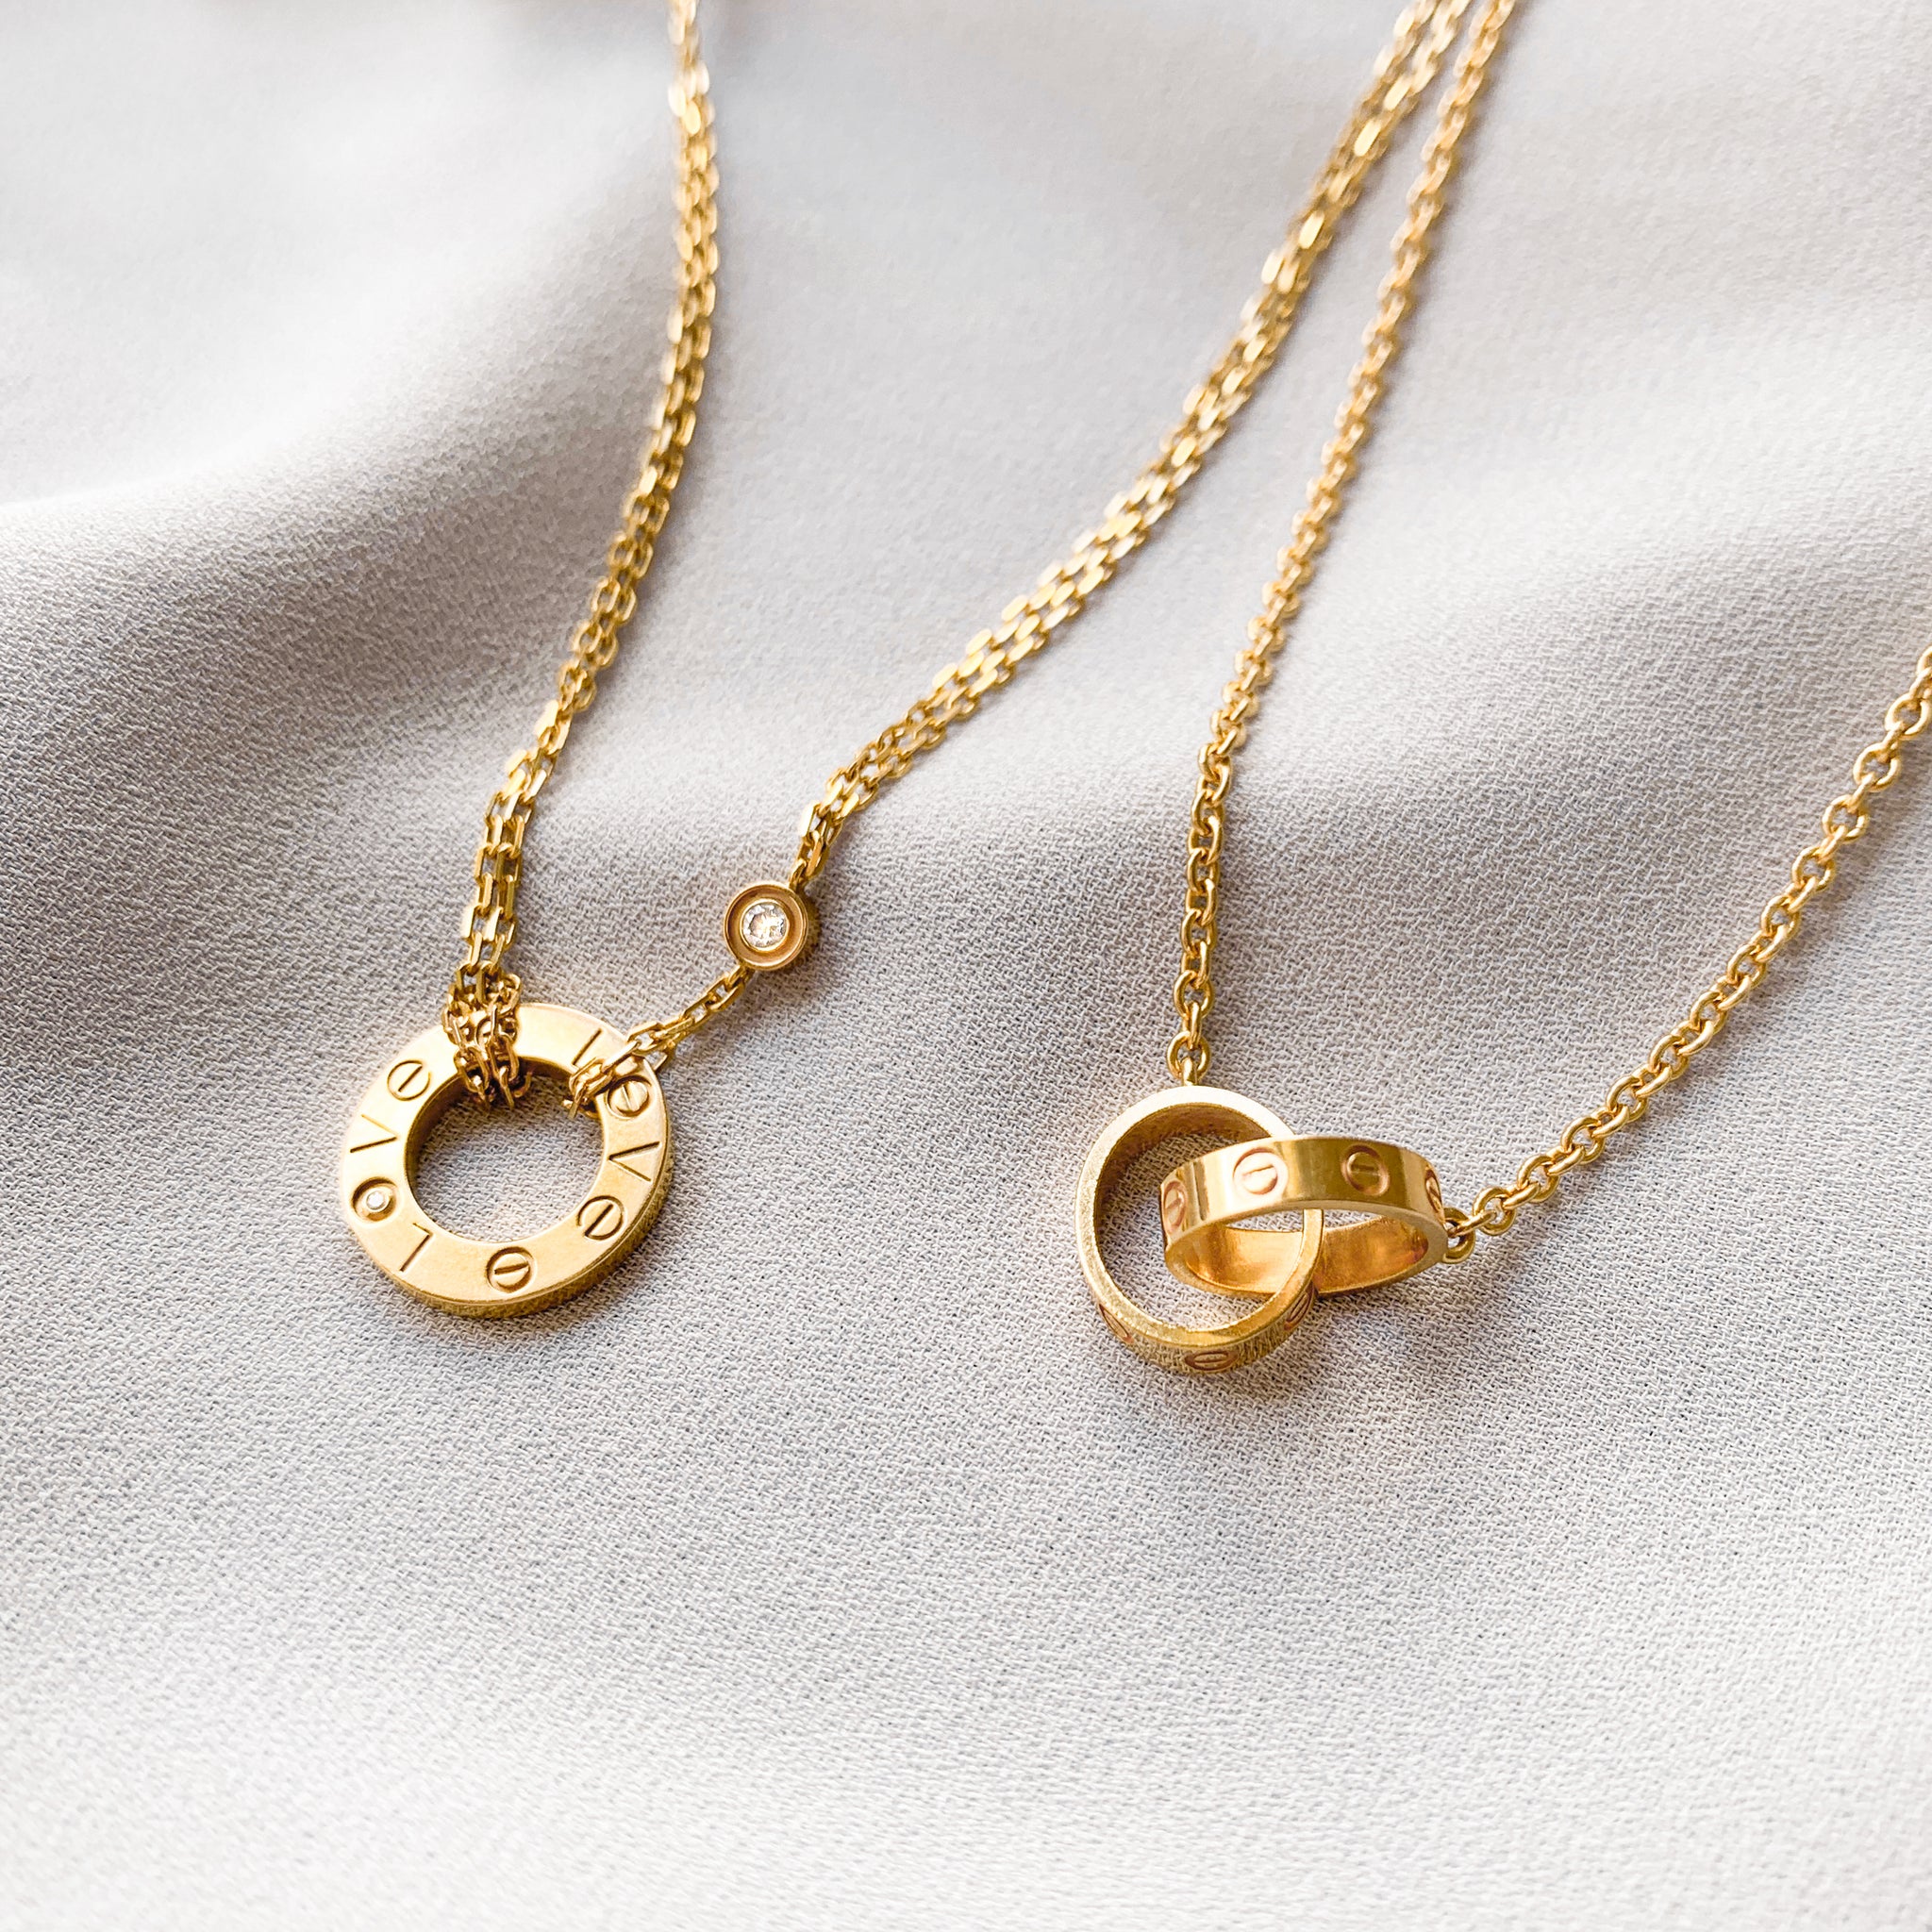 Cartier Interlocking Love Necklace Buy Now Top Sellers 54 Off Noirenhancement Net